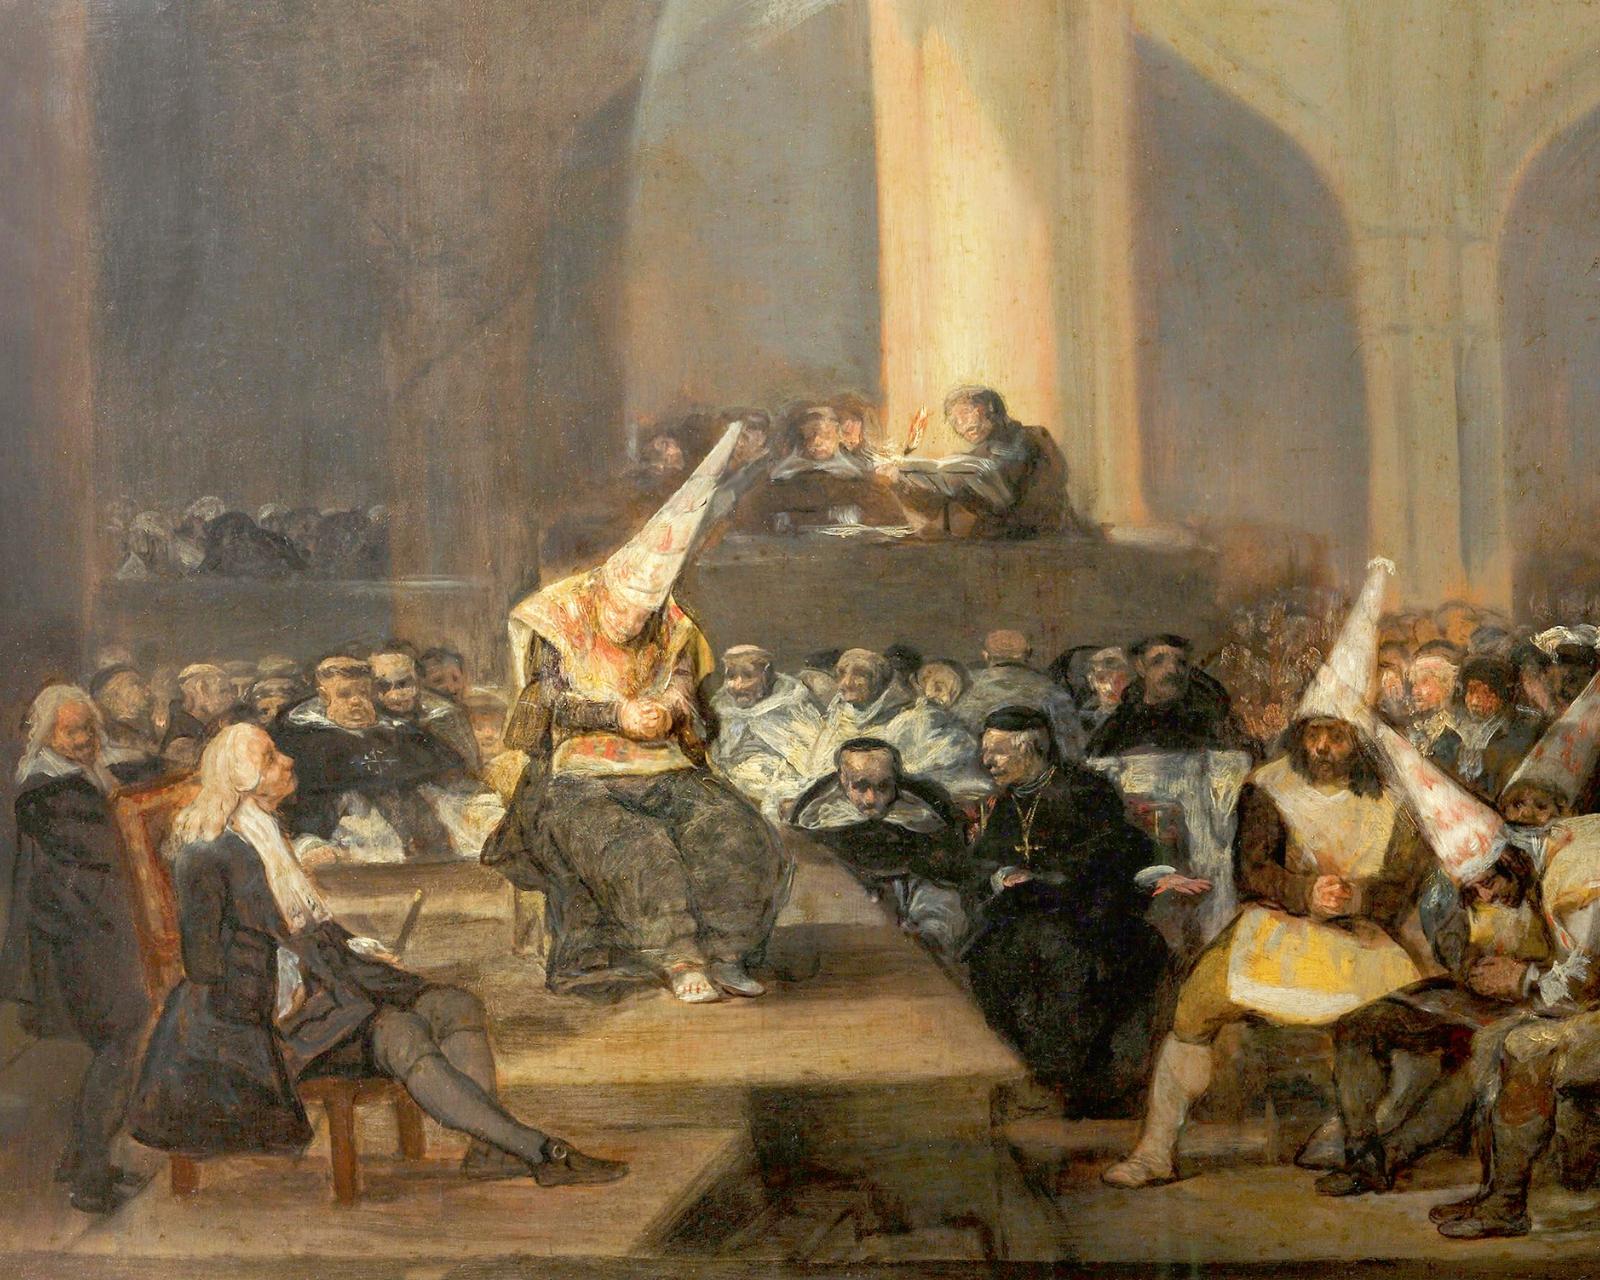 Трибунал инквизиции. Франсиско Гойя, 1819 год.